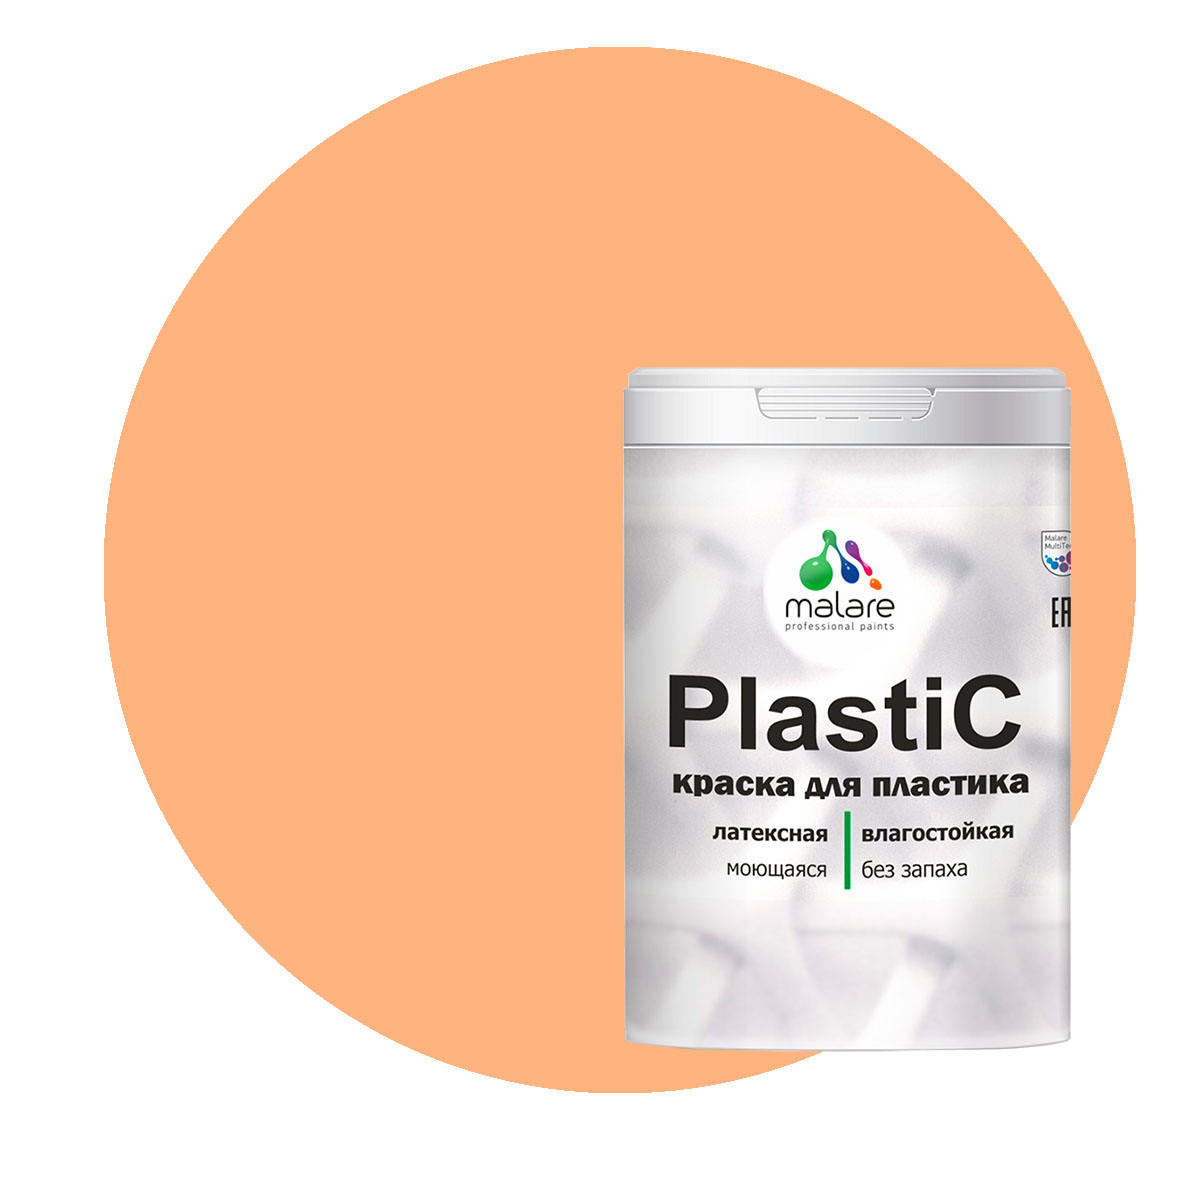 Краска Malare PlastiC для пластика, ПВХ, для сайдинга, свежая охра, 2 кг. краска malare plastic для пластика пвх для сайдинга свежая охра 2 кг